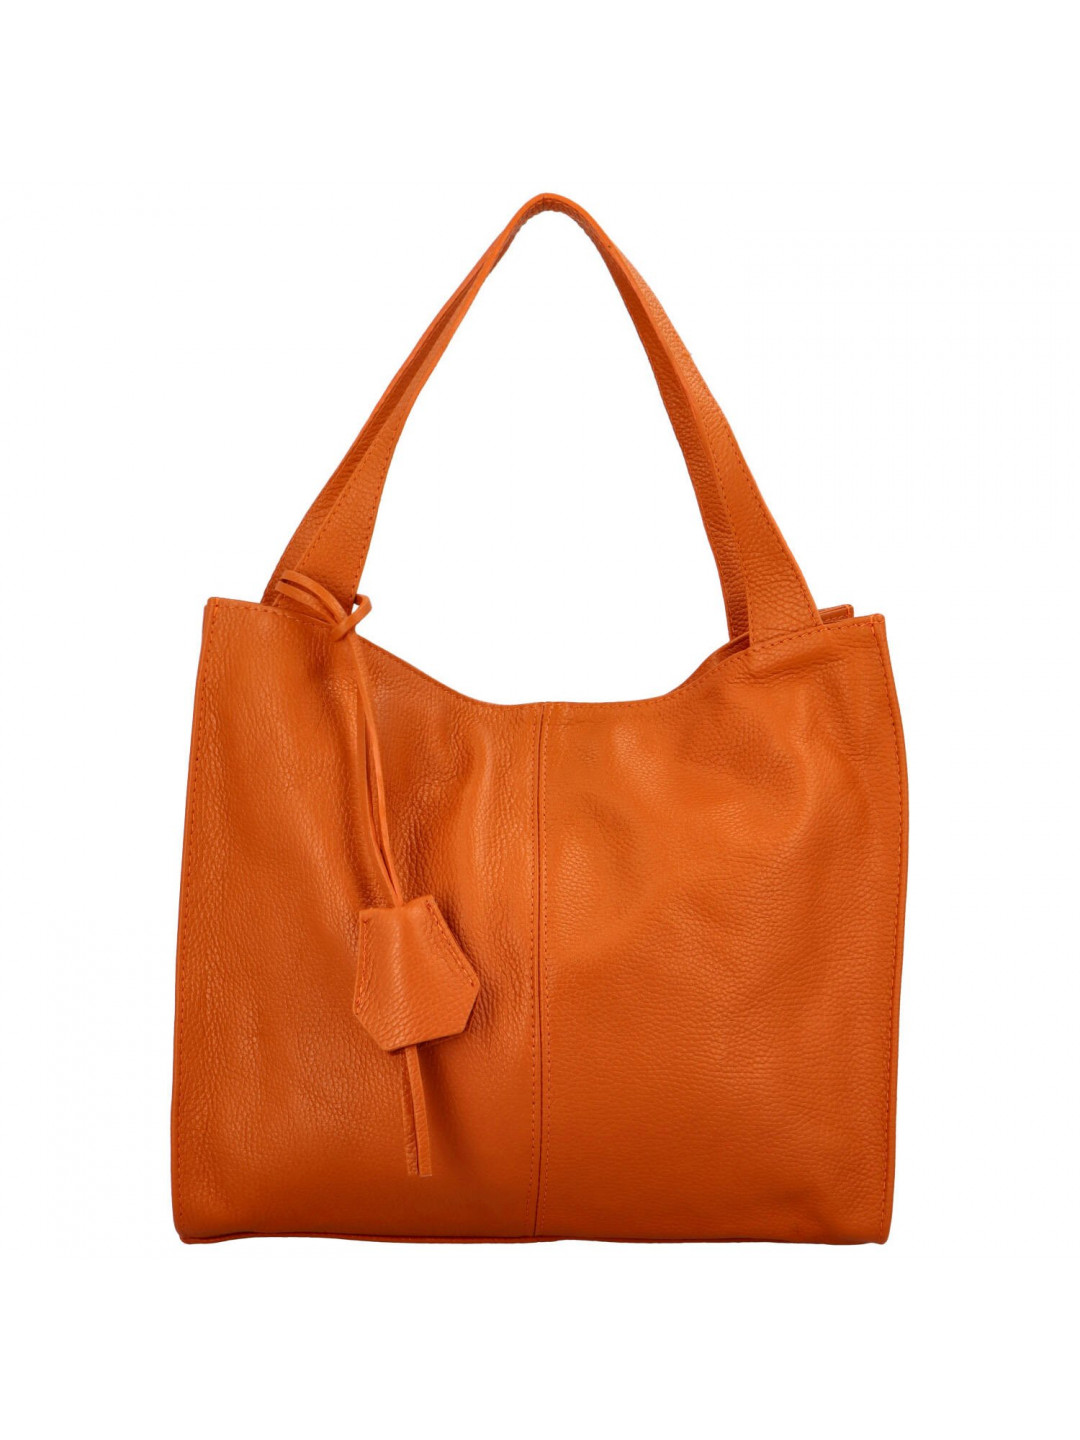 Luxusní kožená kabelka Vera tmavě oranžová